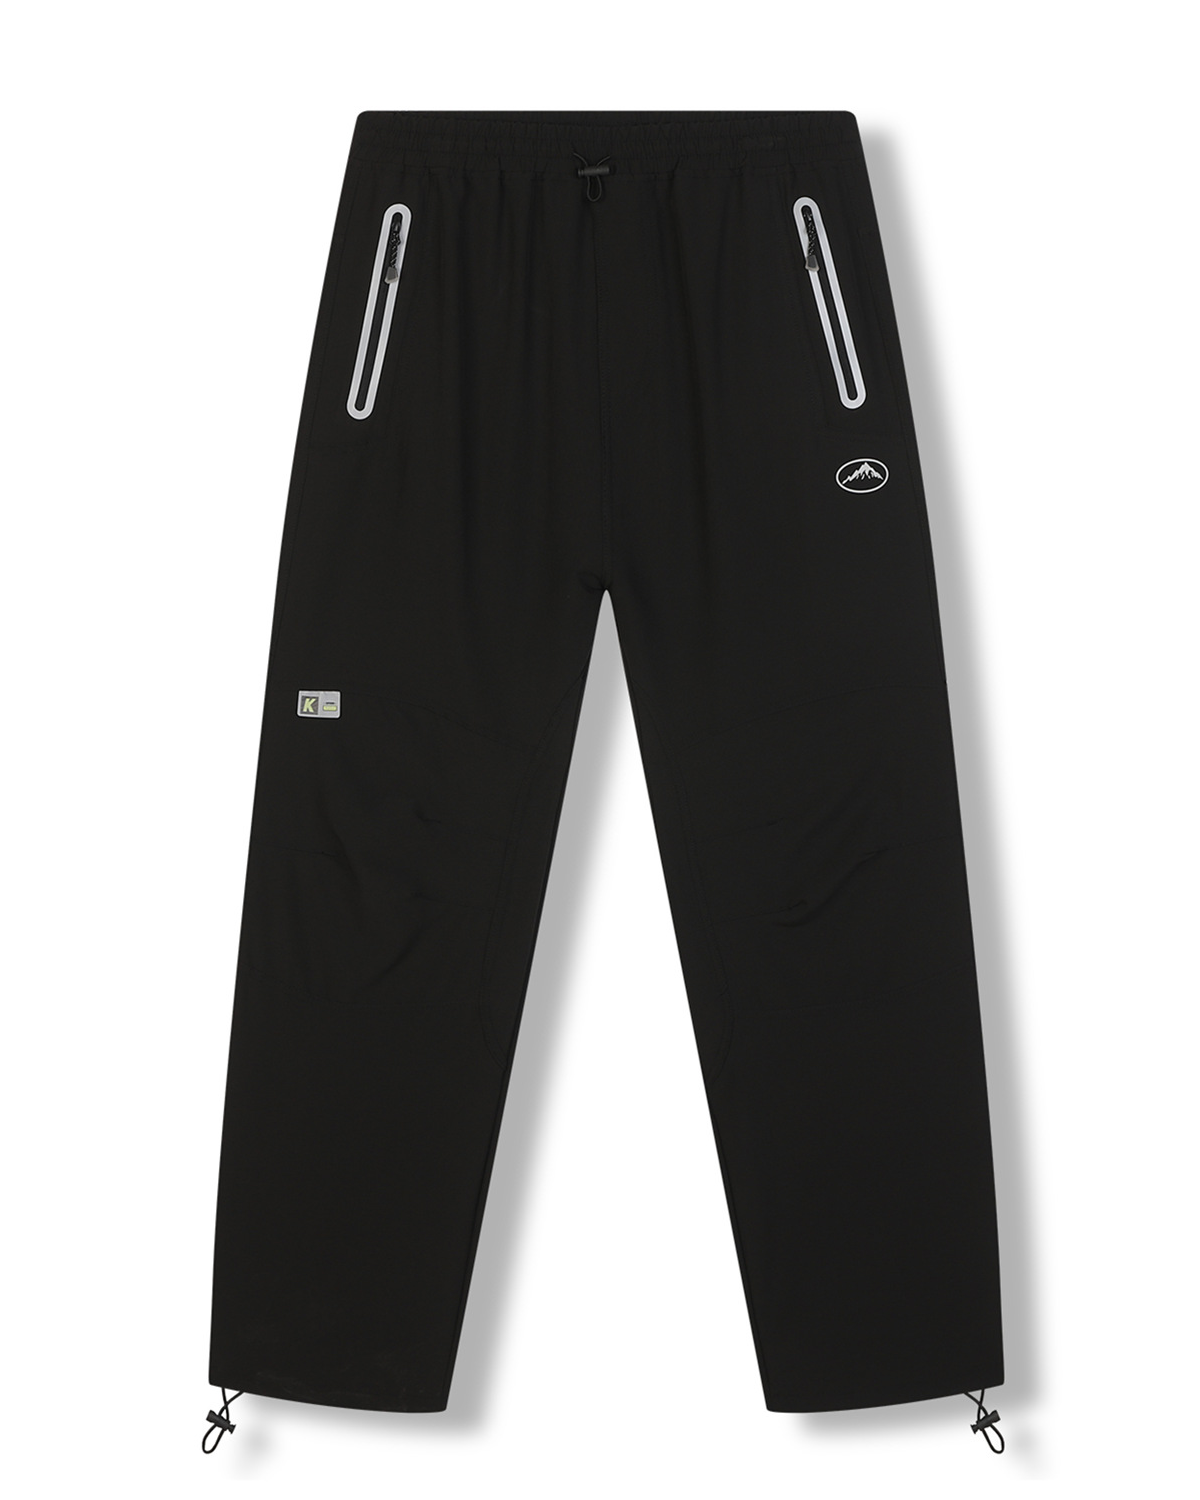 Pánské softshellové kalhoty - KUGO HK7588, celočerná Barva: Černá, Velikost: XL